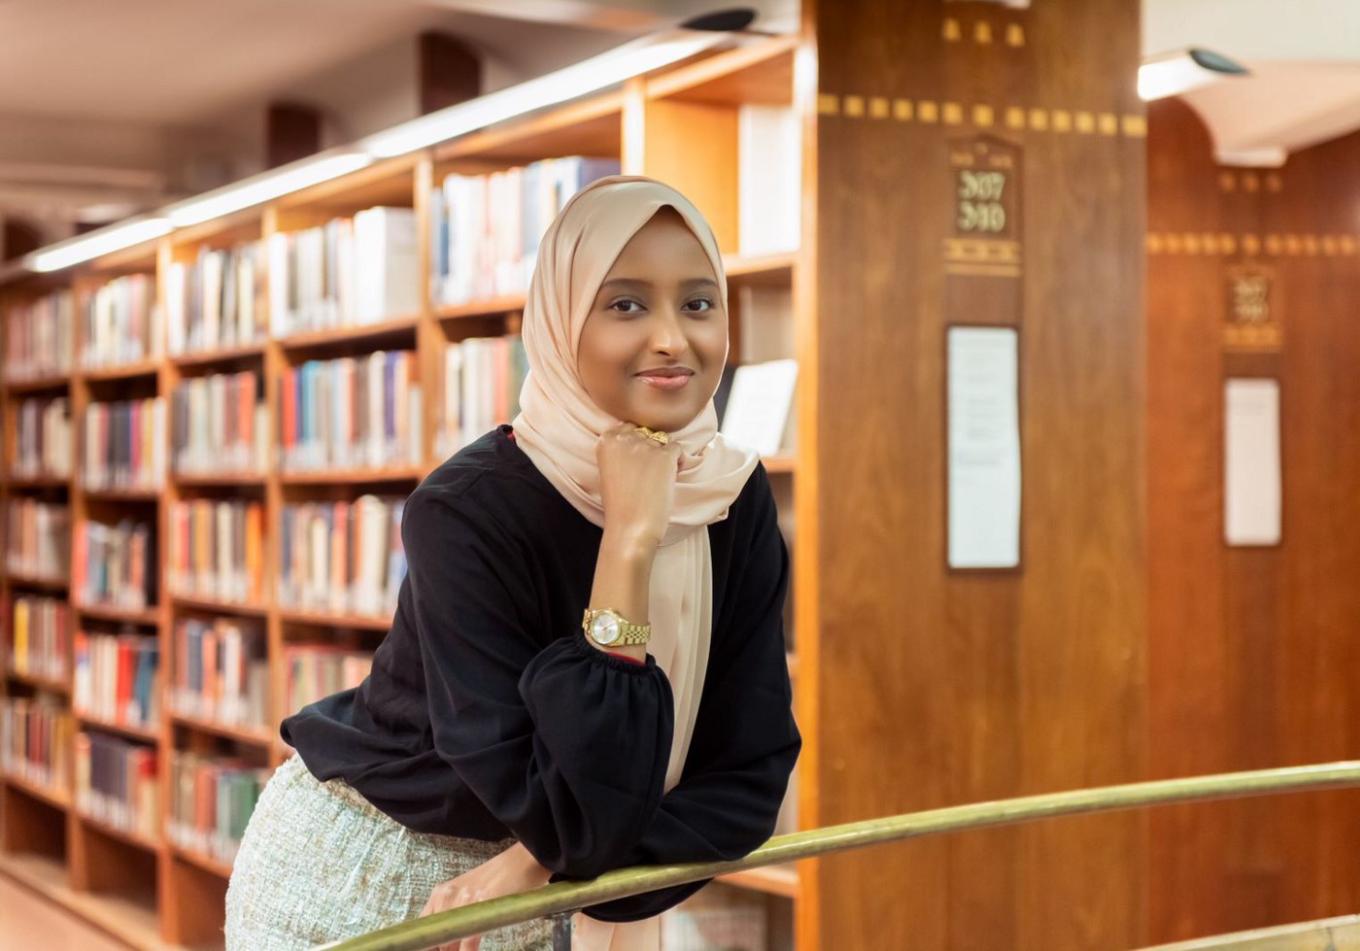 Salaado Qasim, co-founder of RAHY in a school library